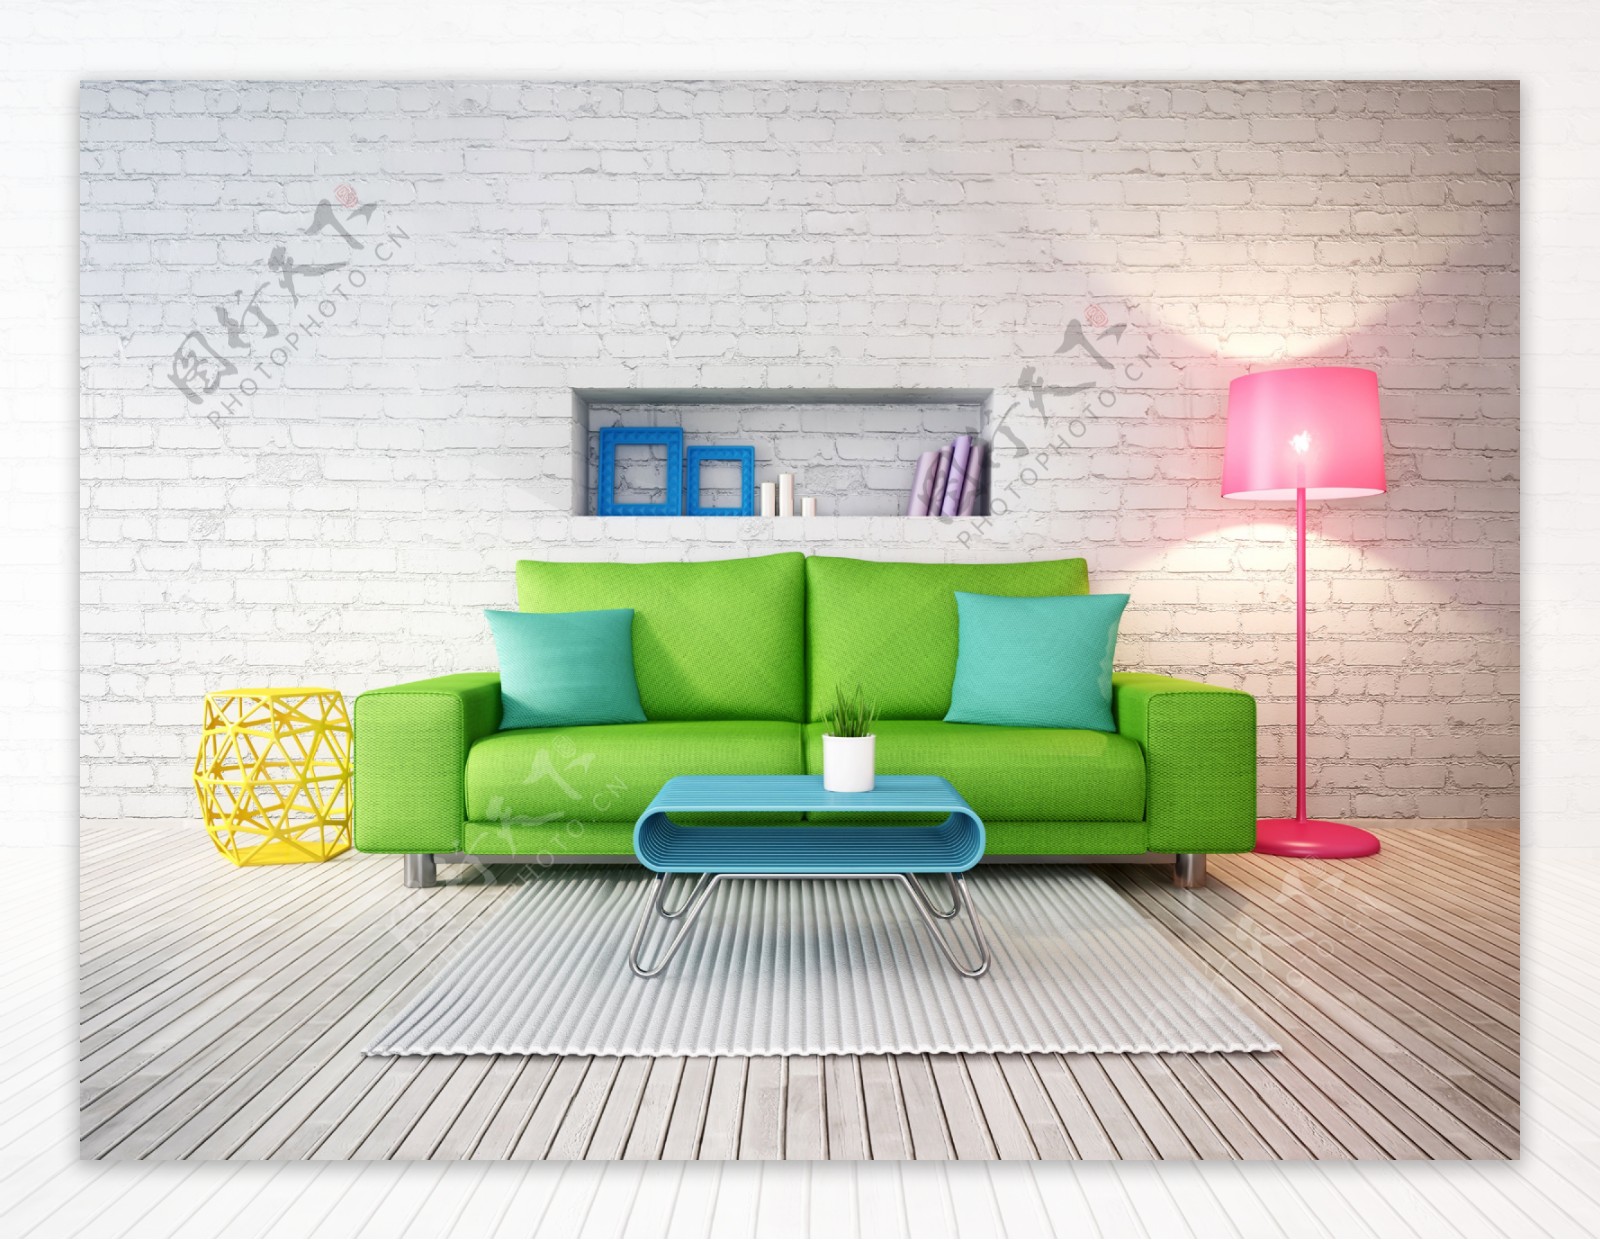 绿色沙发与蓝色茶几图片